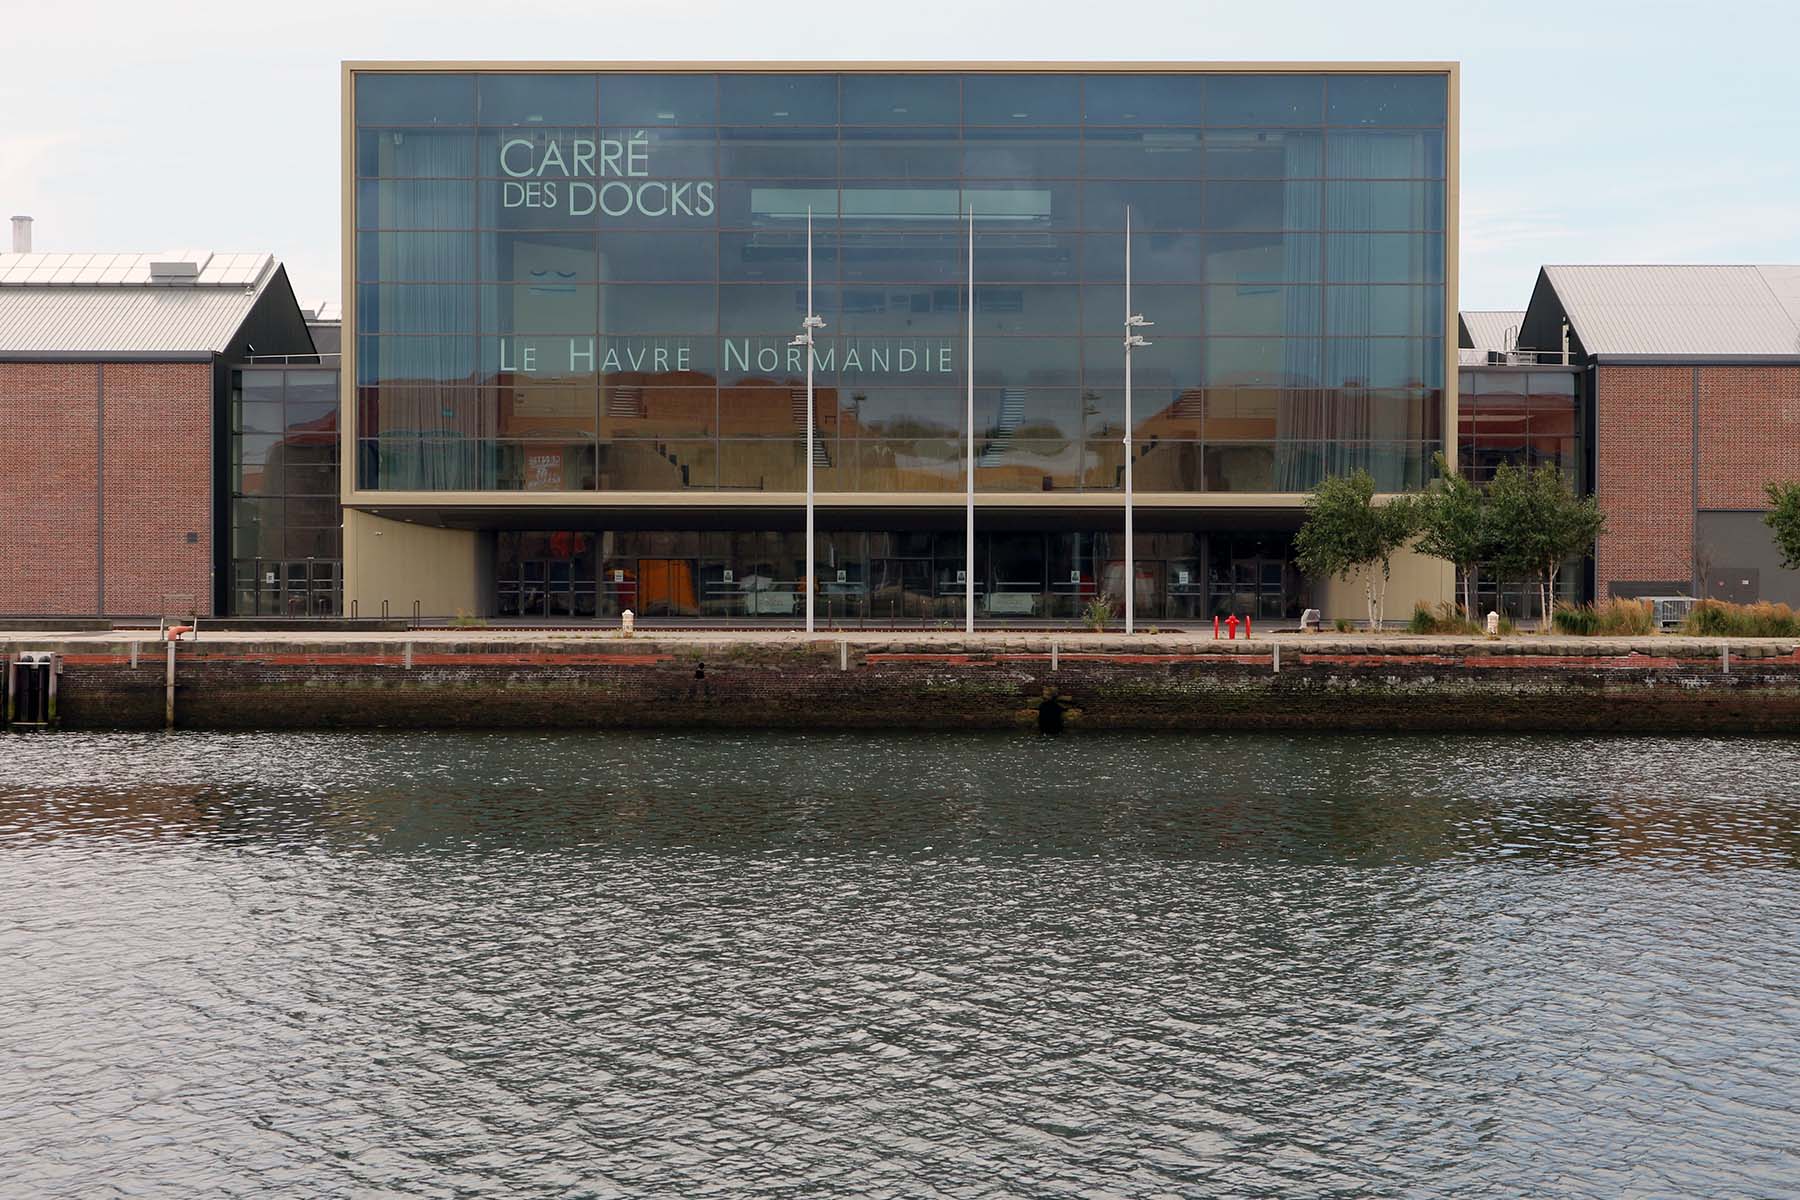 Ein weiteres Highlight das Kongresszentrum Carré des Docks von Paul Andreu und Thomas Richez.